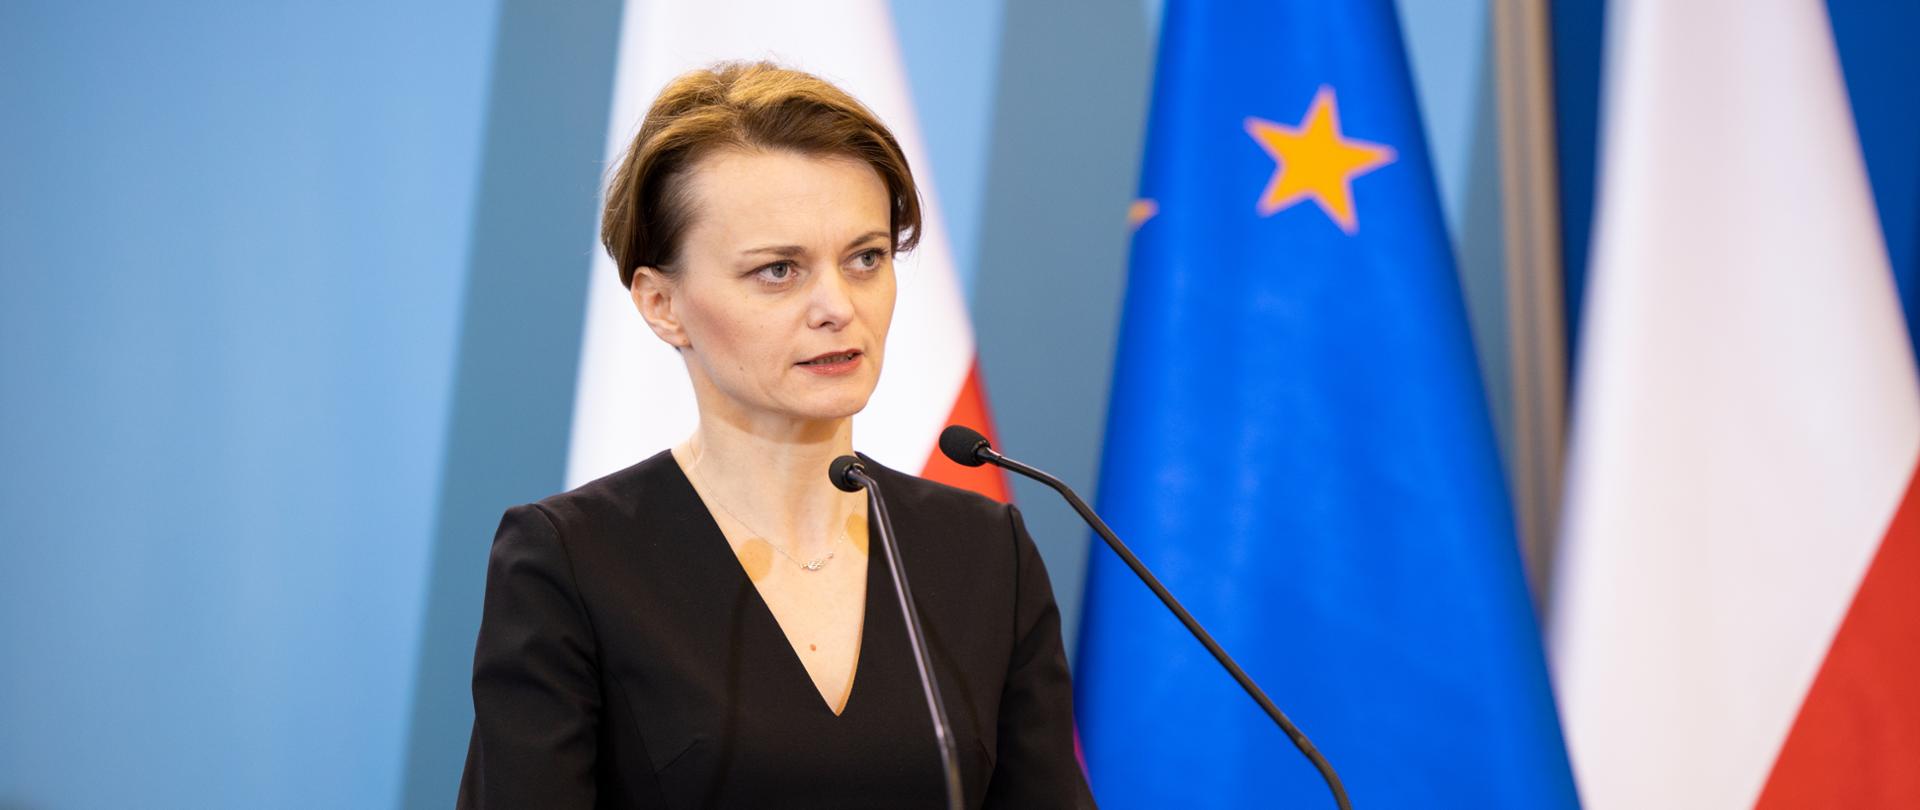 Wicepremier Jadwiga Emilewicz stoi za mównicą, za nią rozmyte flagi Polski i Unii Europejskiej.